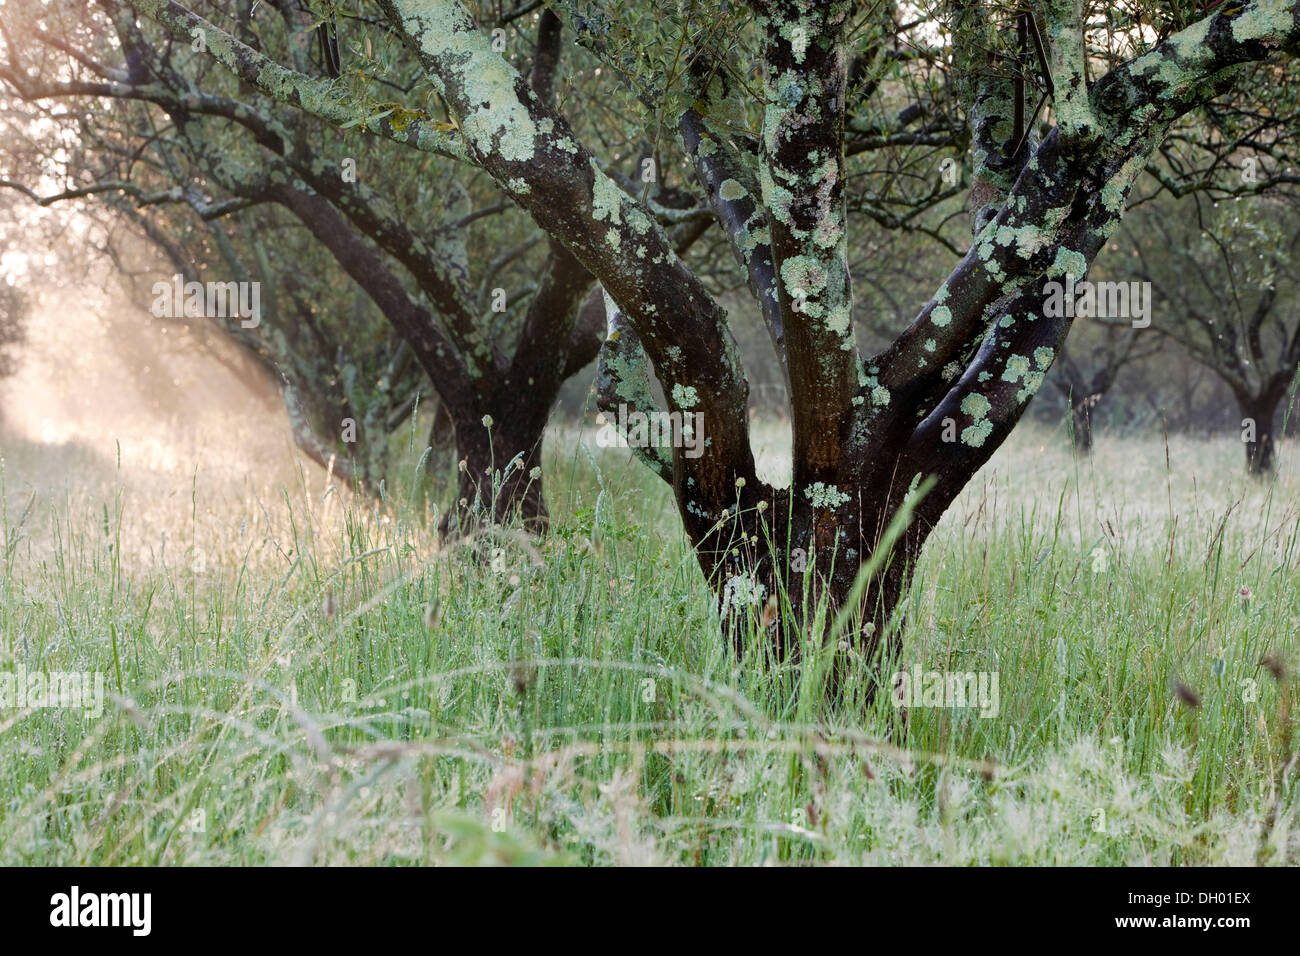 Olivar, olivos (Olea europaea), Alpes-de-Haute-Provence, Francia Foto de stock